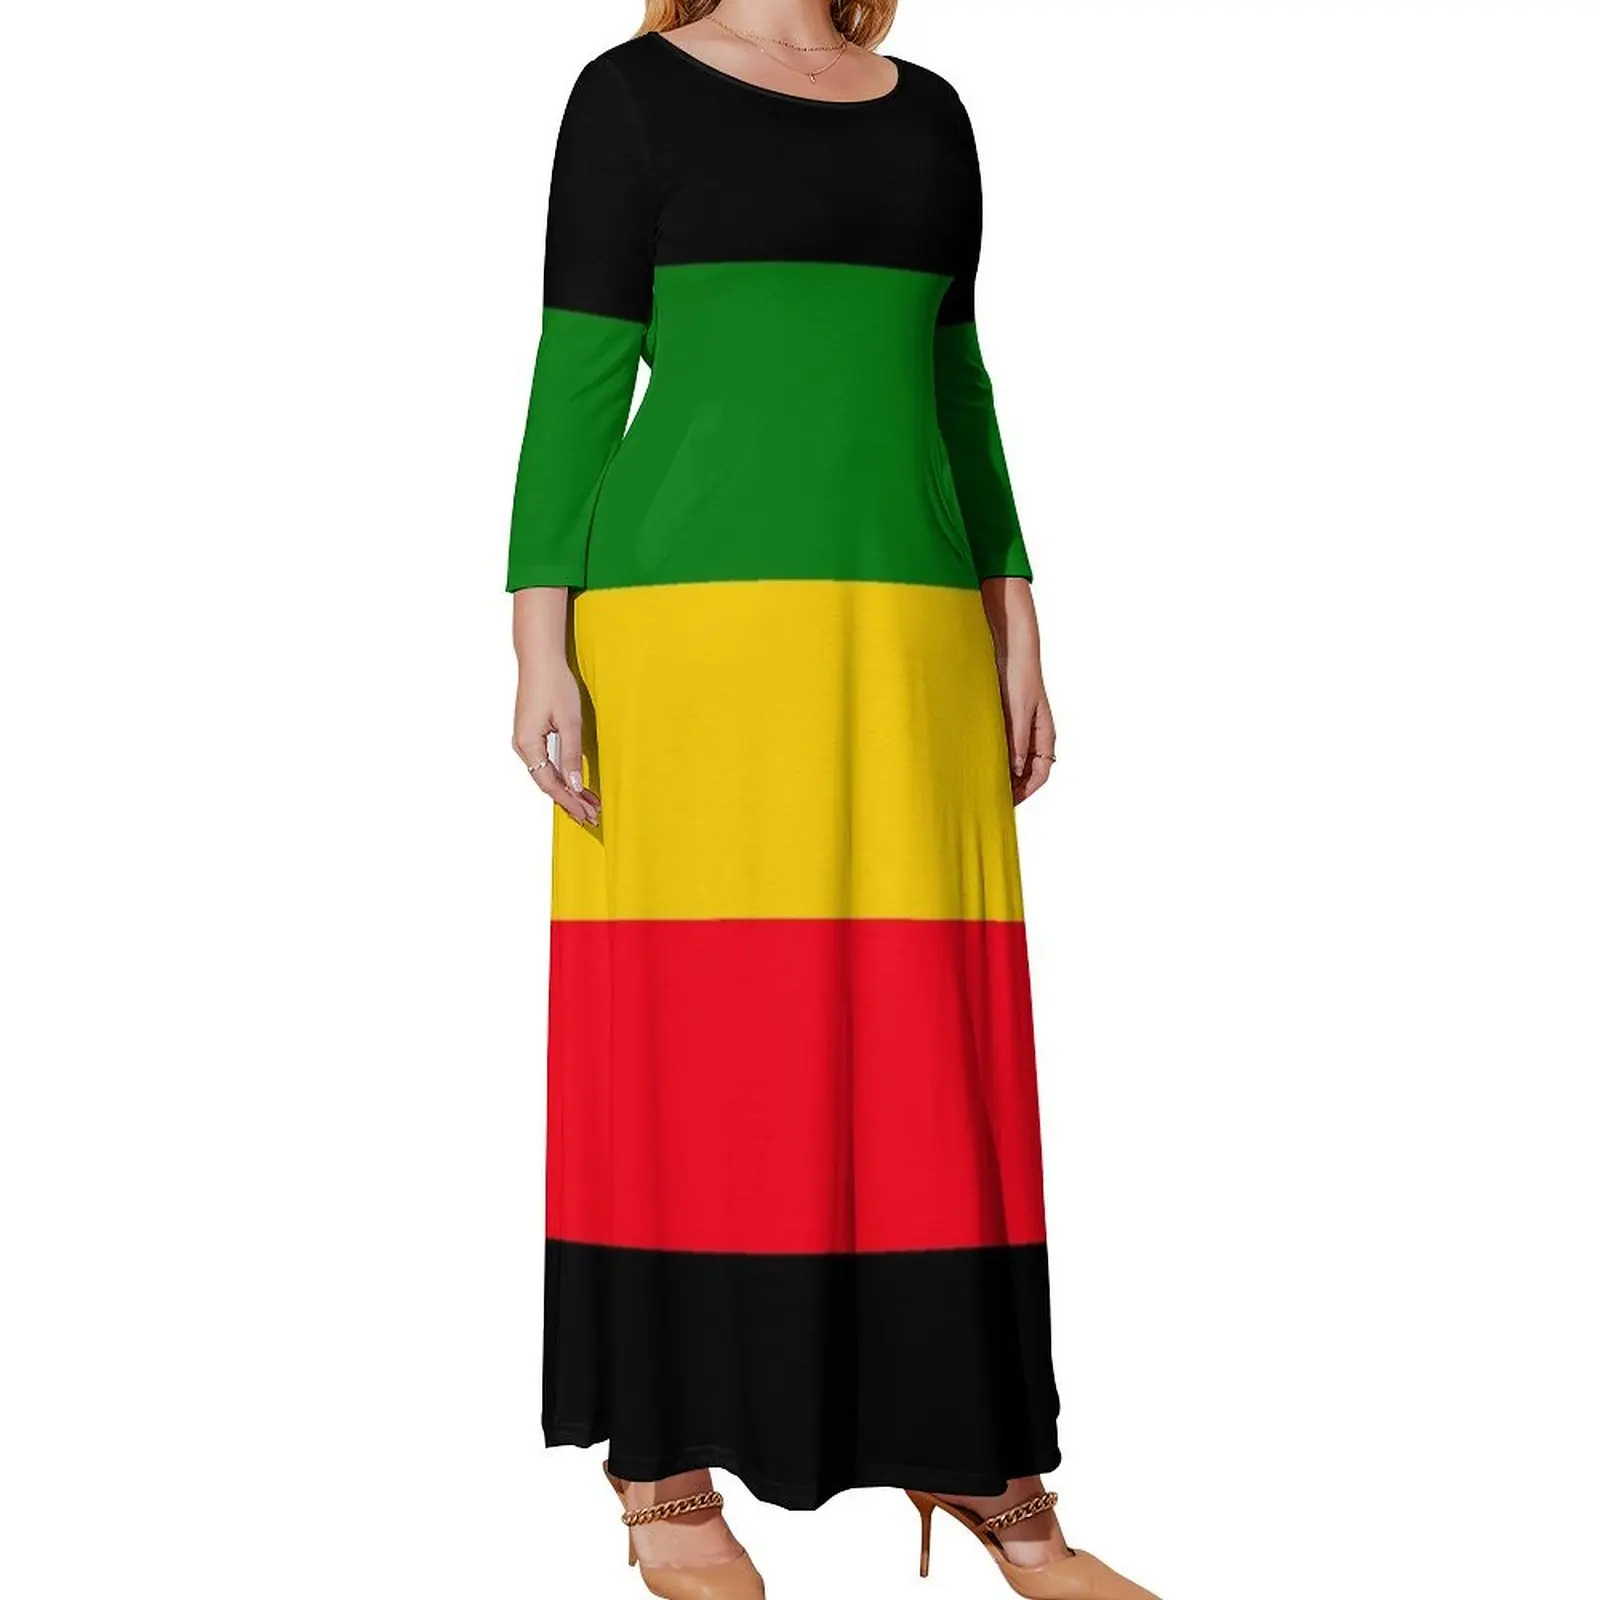 

Женское летнее платье с длинным рукавом, зеленое, желтое и красное платье с флагом раста, роскошные женские платья